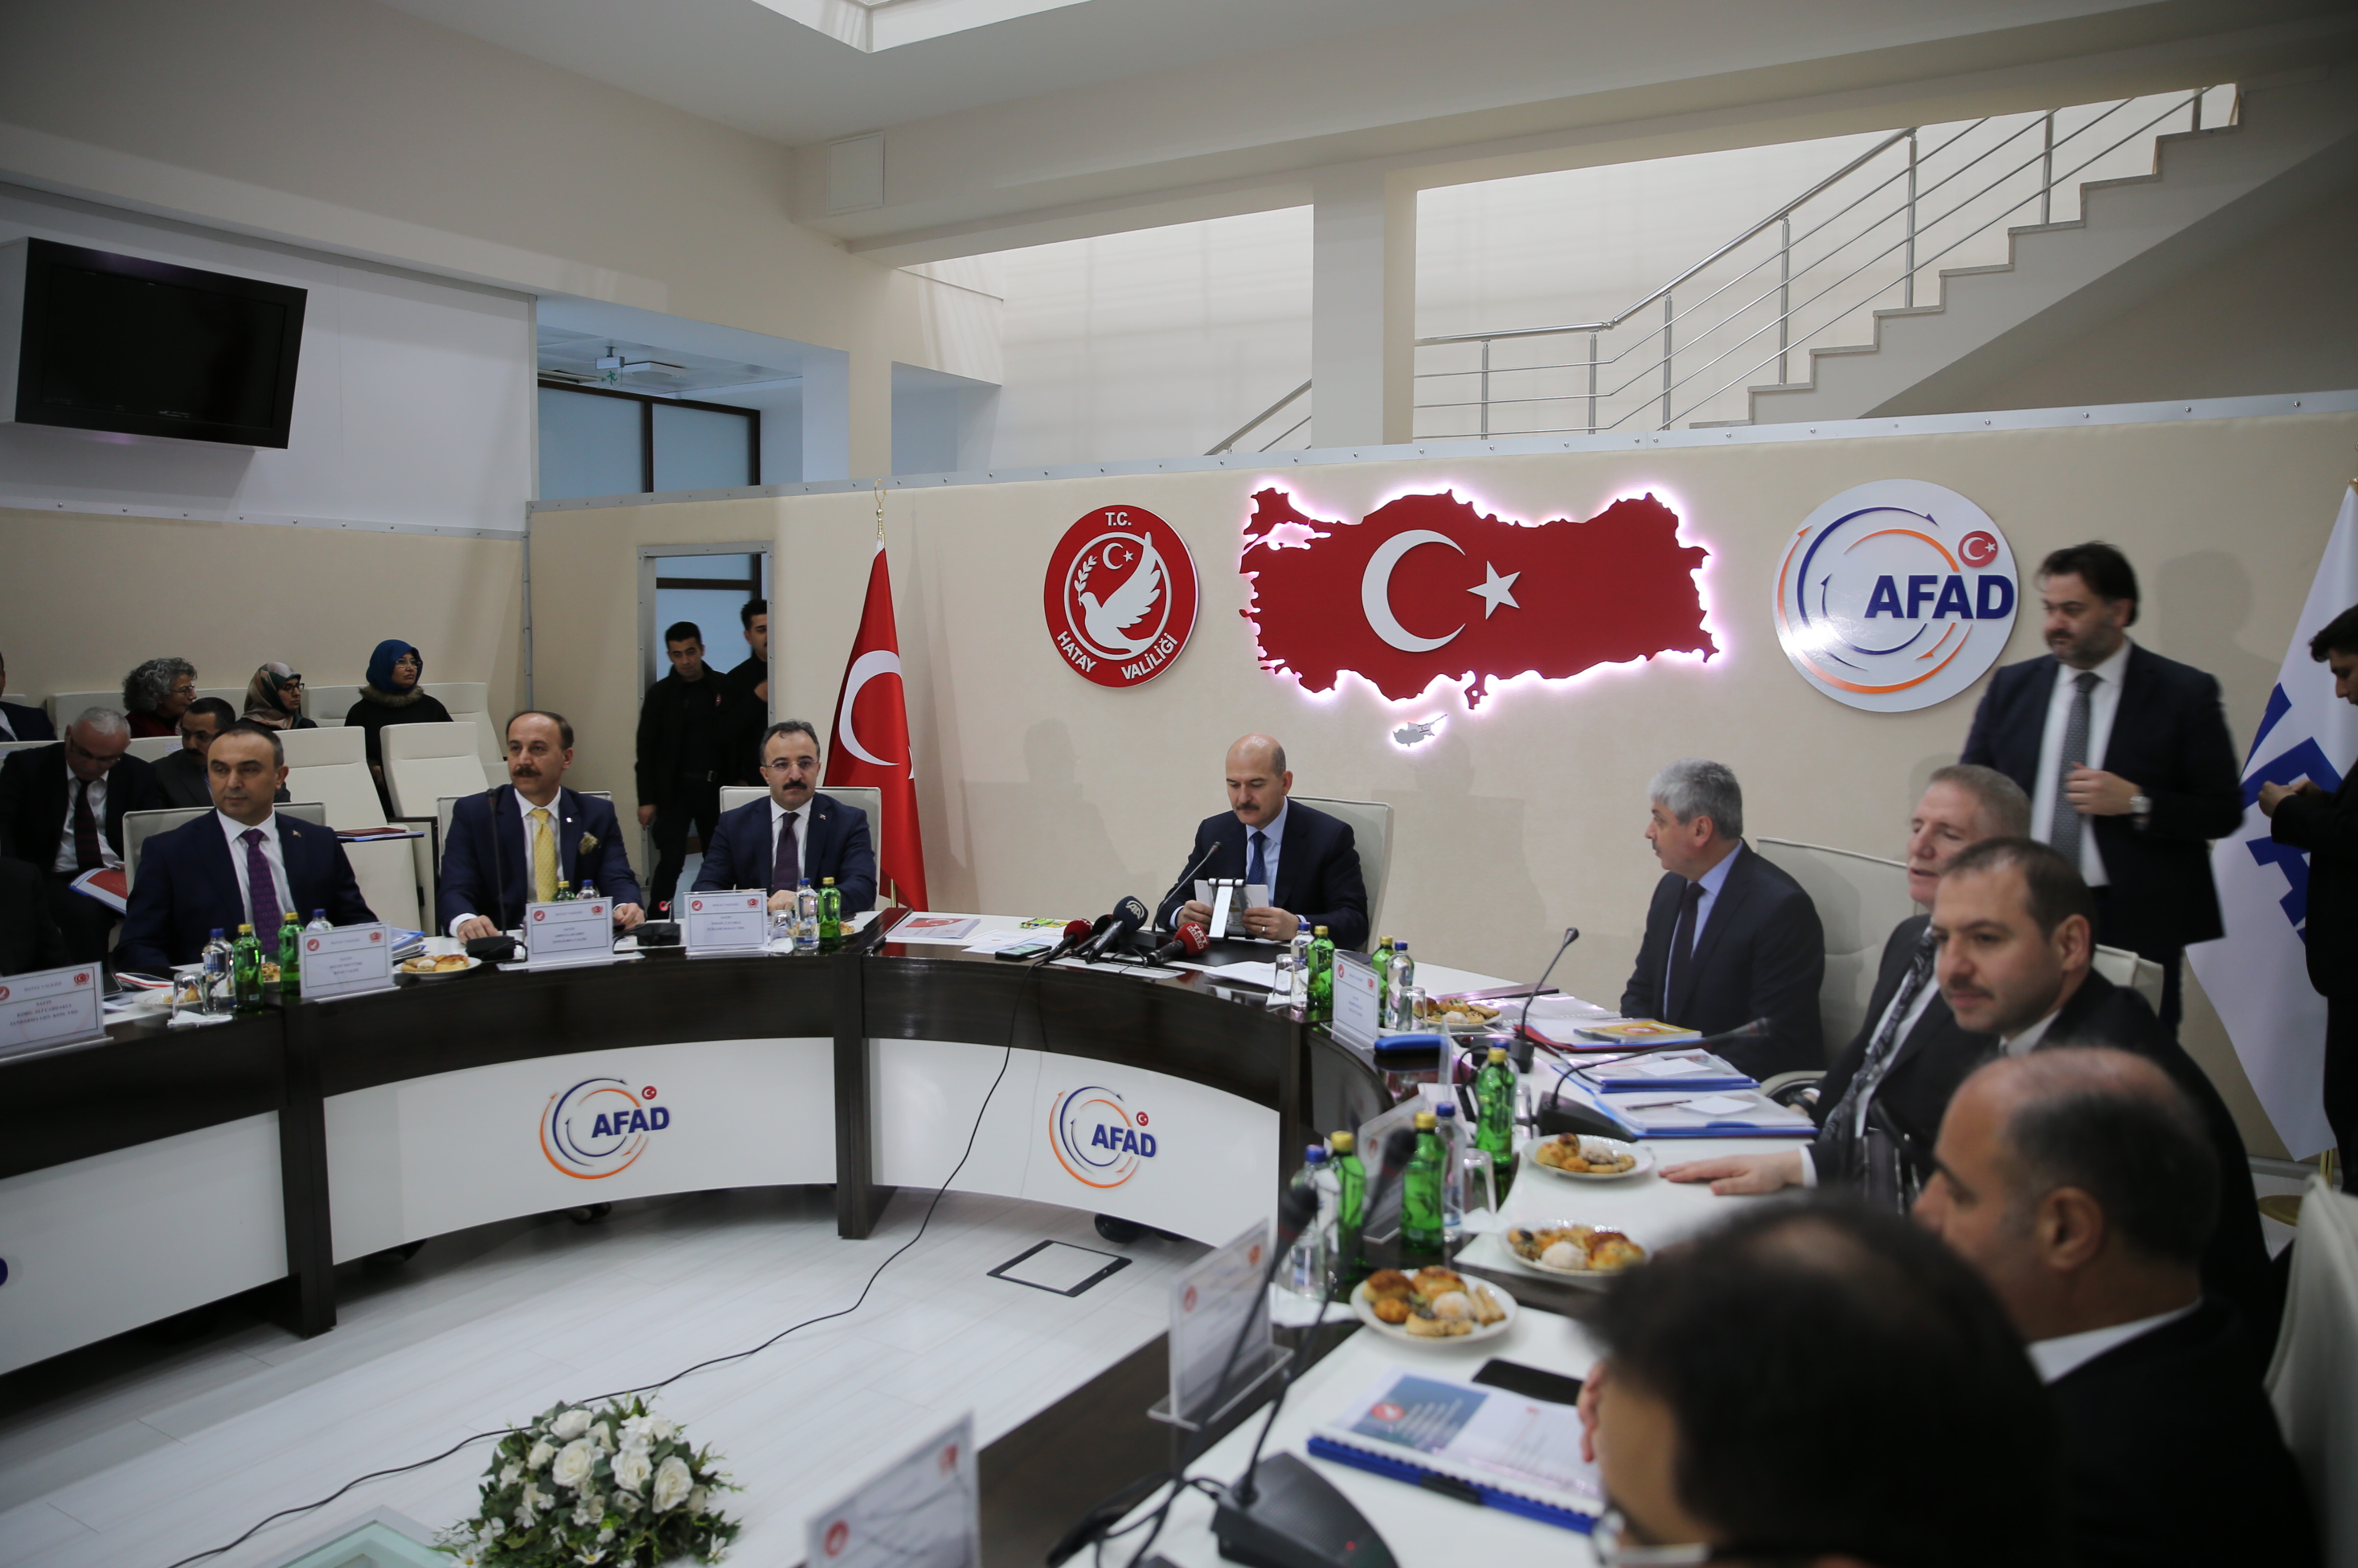 İçişleri Bakanı Süleyman Soylu, Suriye Görev Gücü Koordinasyon ve Değerlendirme Toplantısına katılmak üzere Hatay'a geldi.